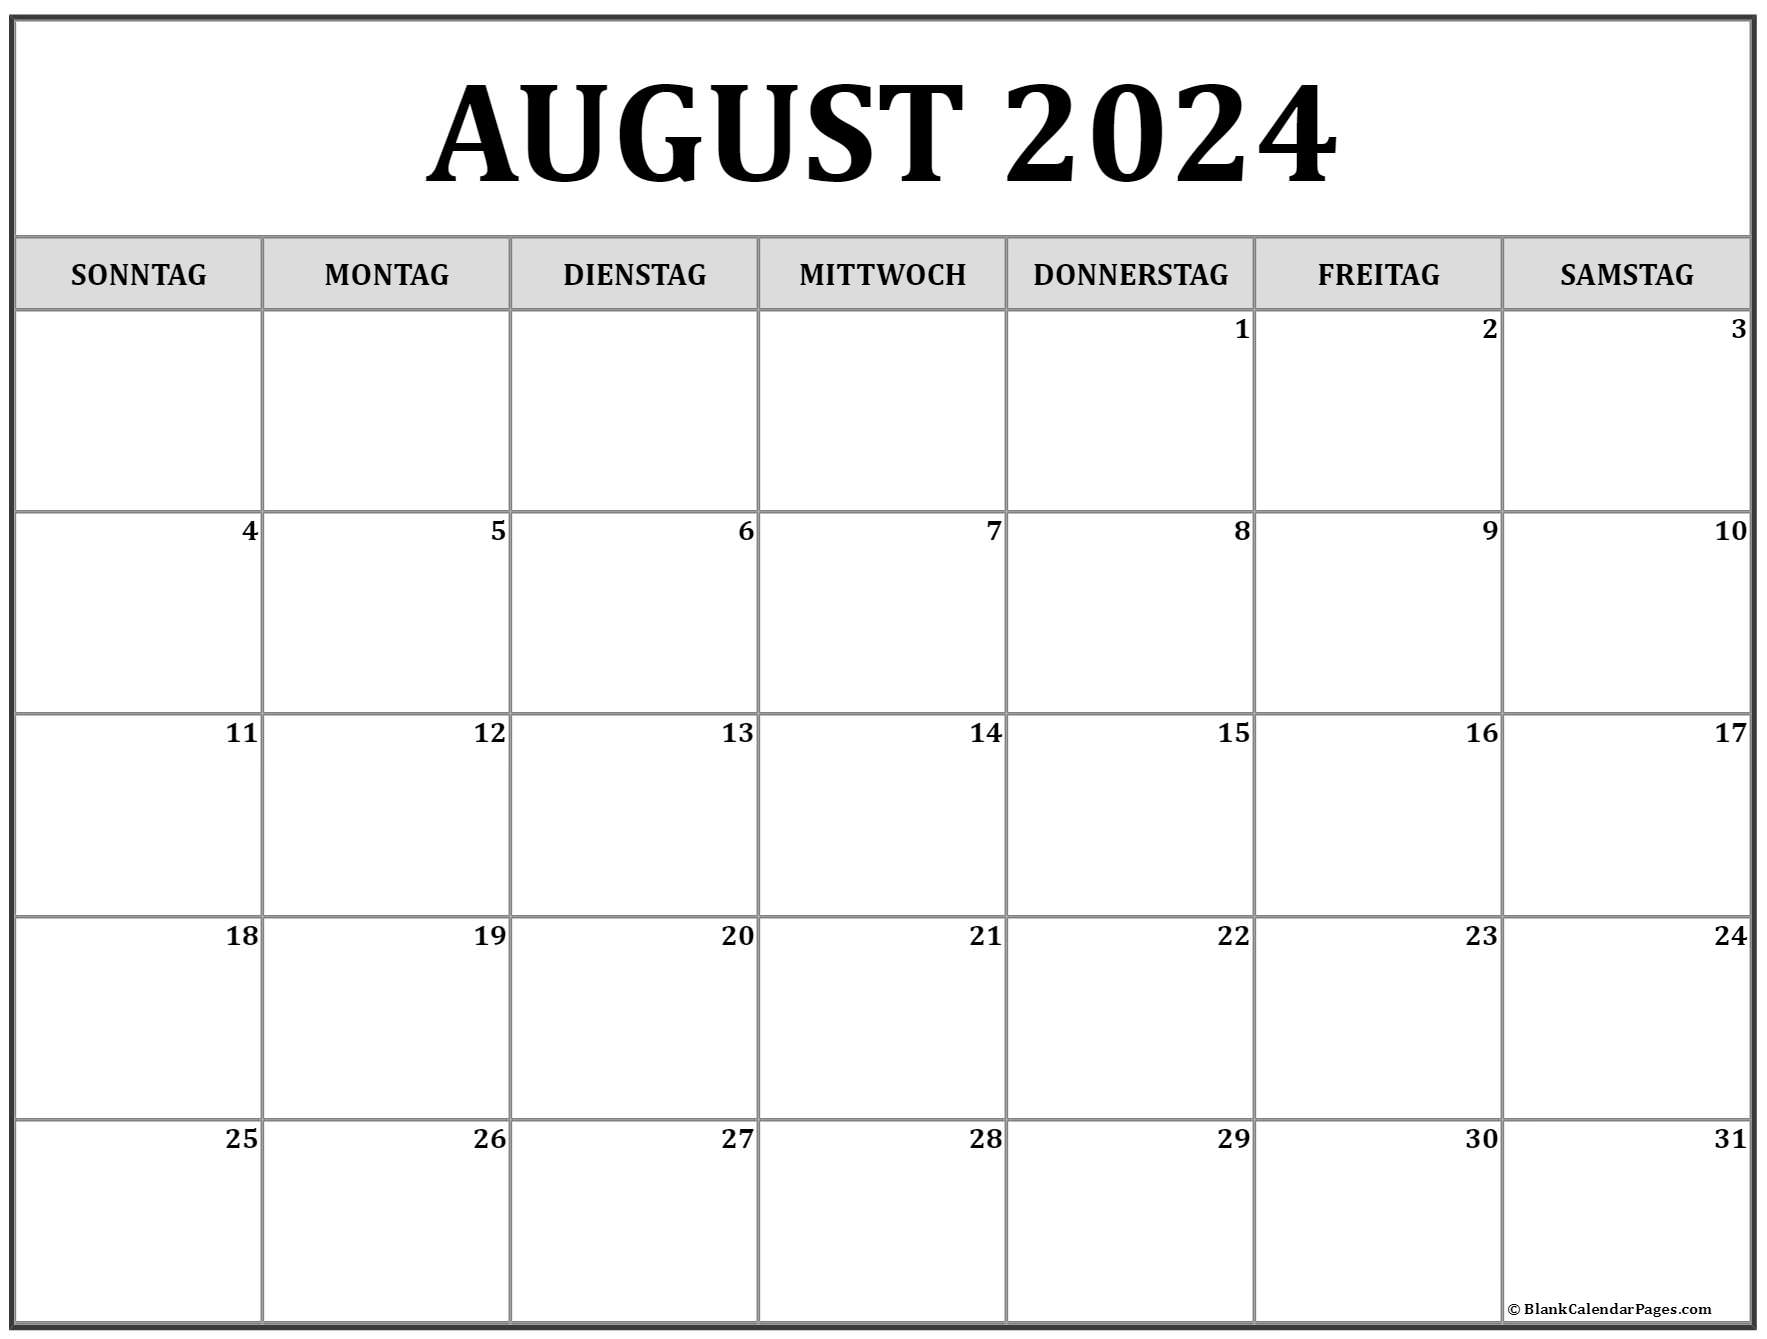 August 2024 kalender auf Deutsch kalender 2024